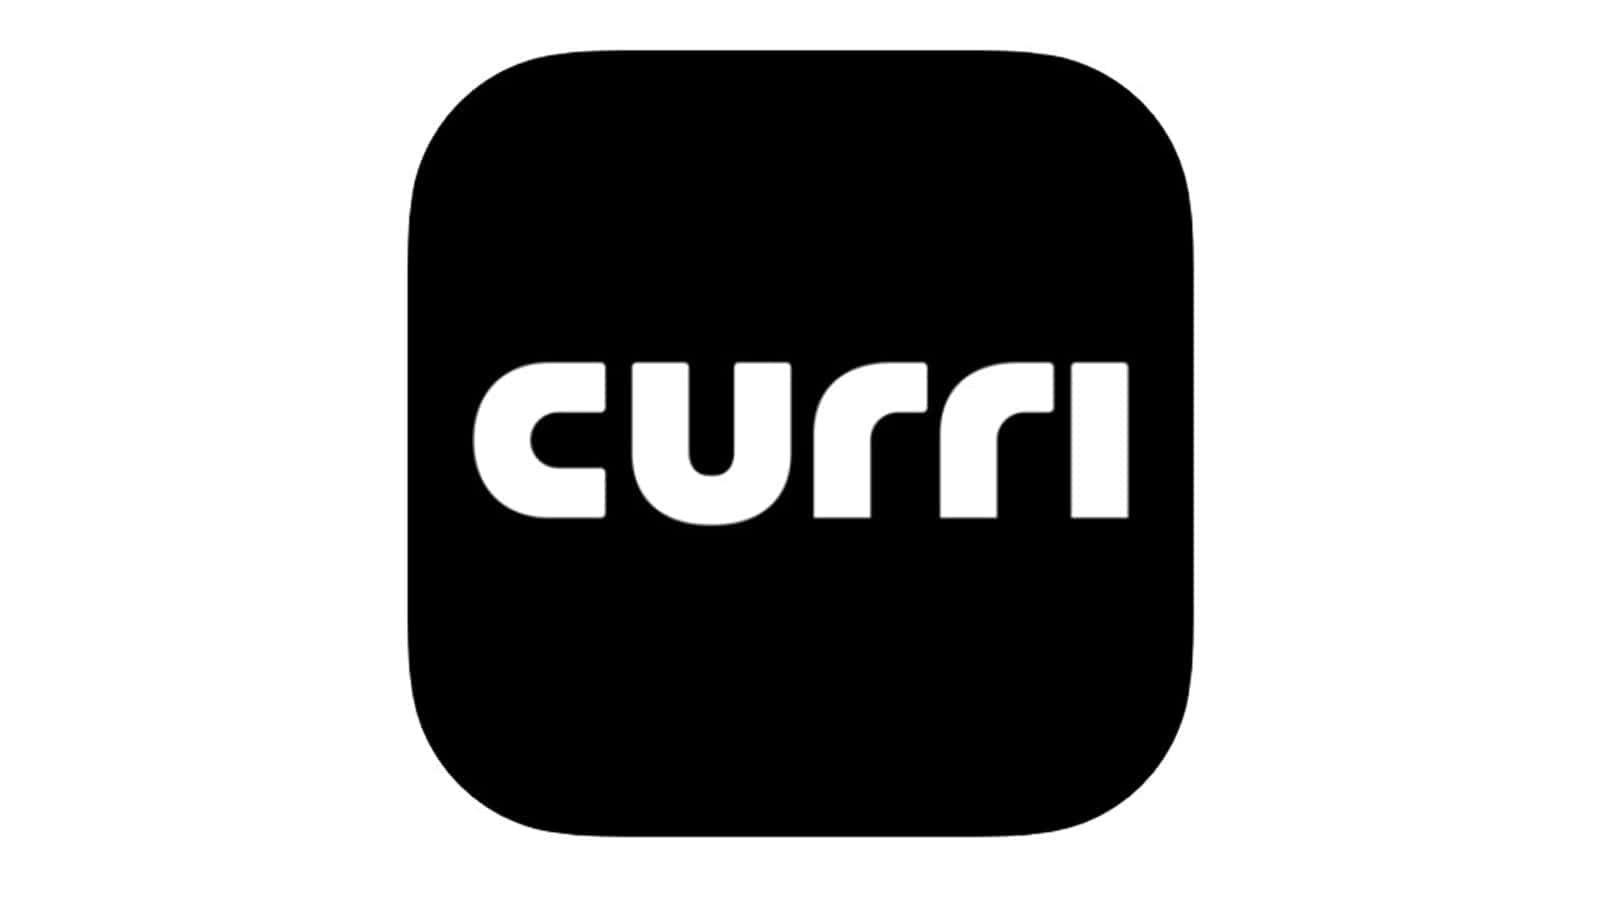 Curri 現場もIT活用の時代へ、Uberスタイルの新たな資材輸送サービス